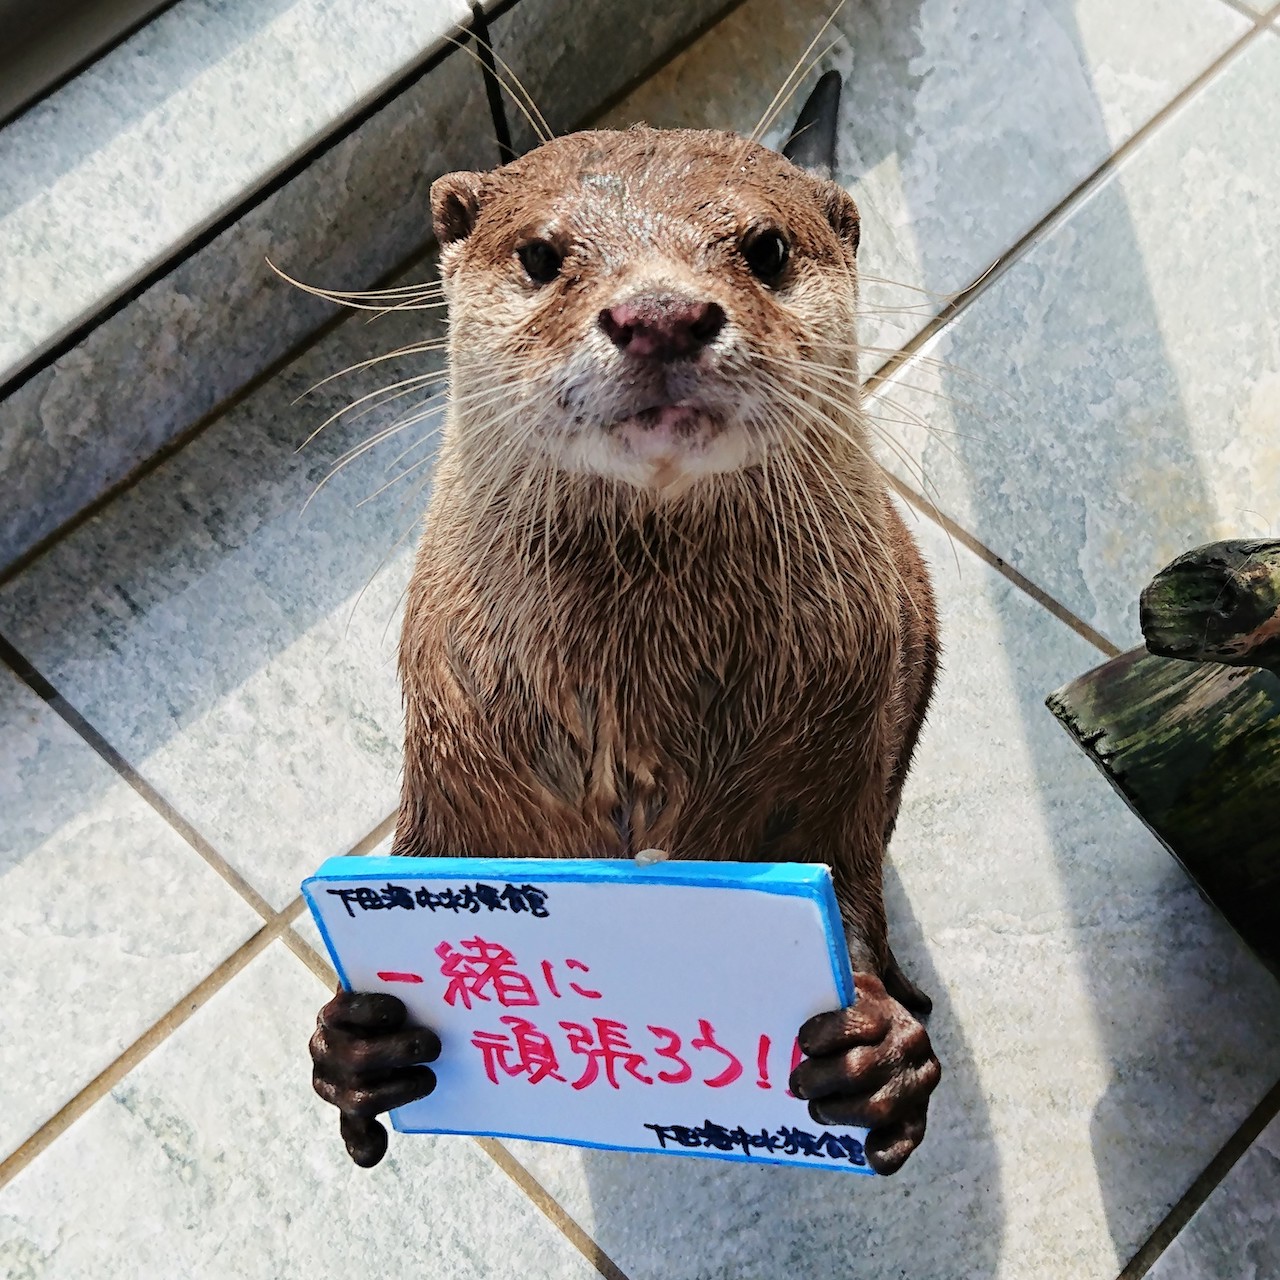 下田海中水族館 Eチケット 